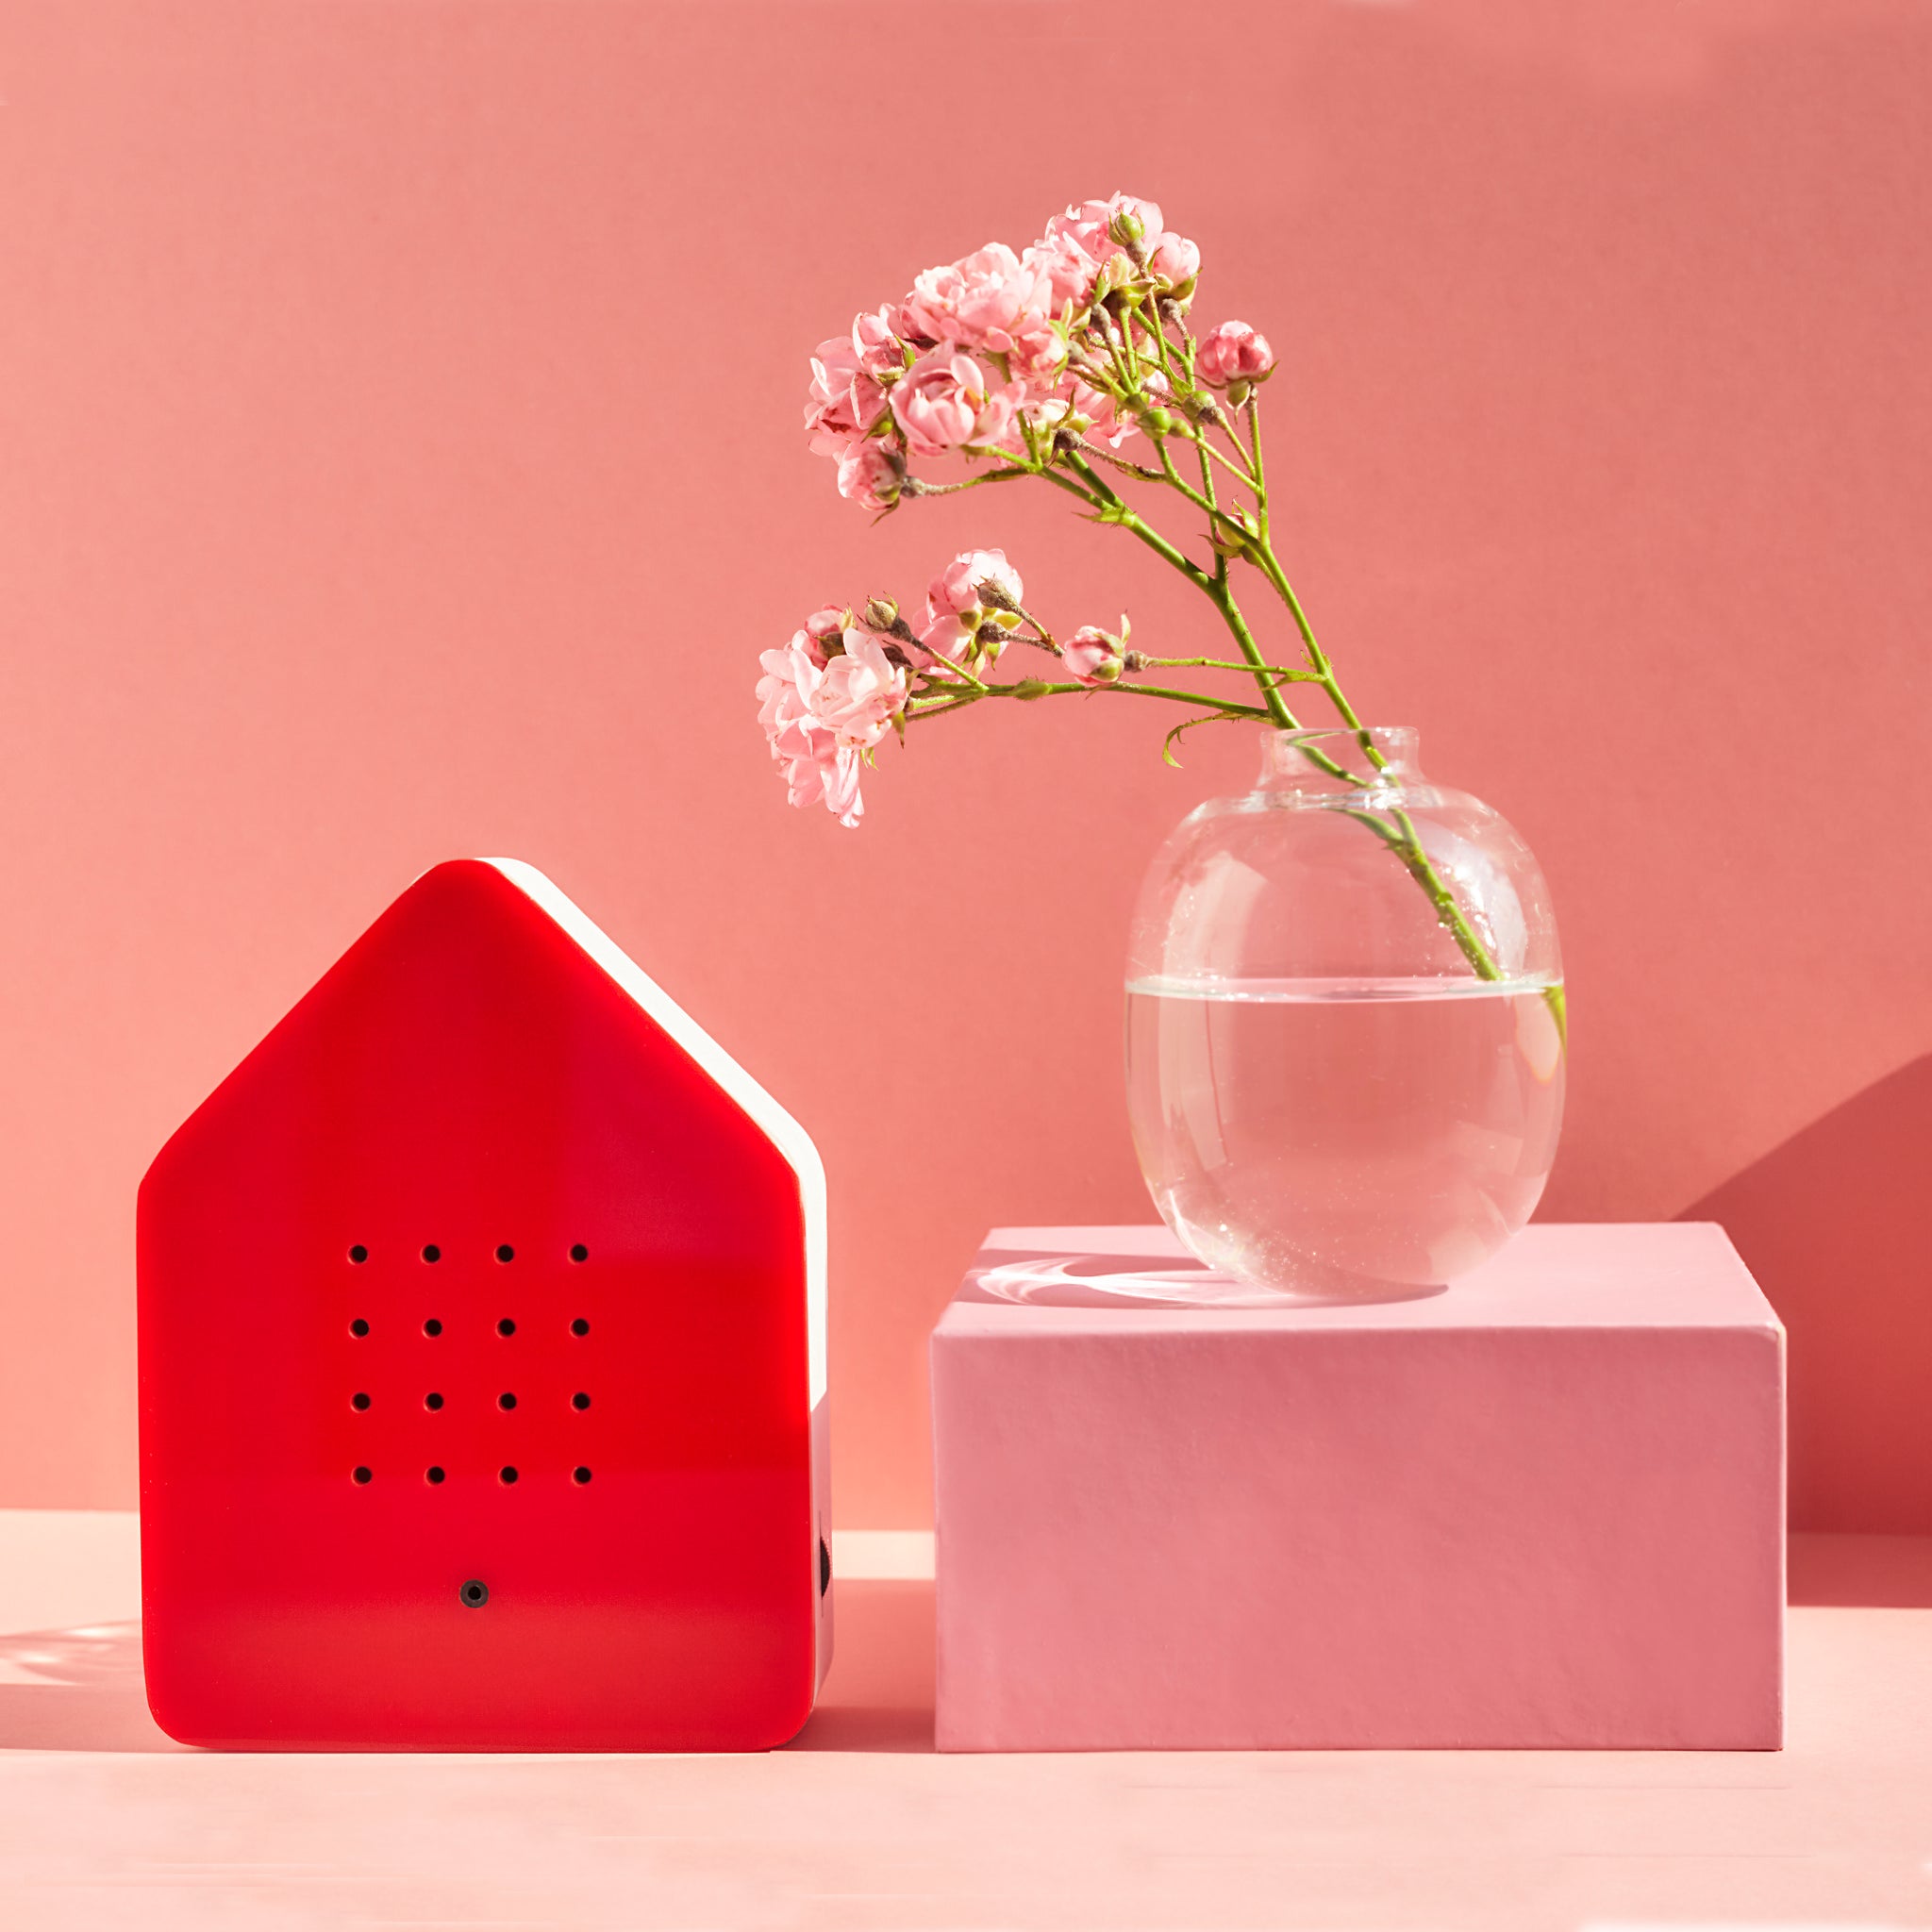 Zwitscherbox Classic Rood Huisje met Vogelgeluiden│Relaxound│art. 11ZBX0101004│roze achtergrond en vaasje met roze bloem